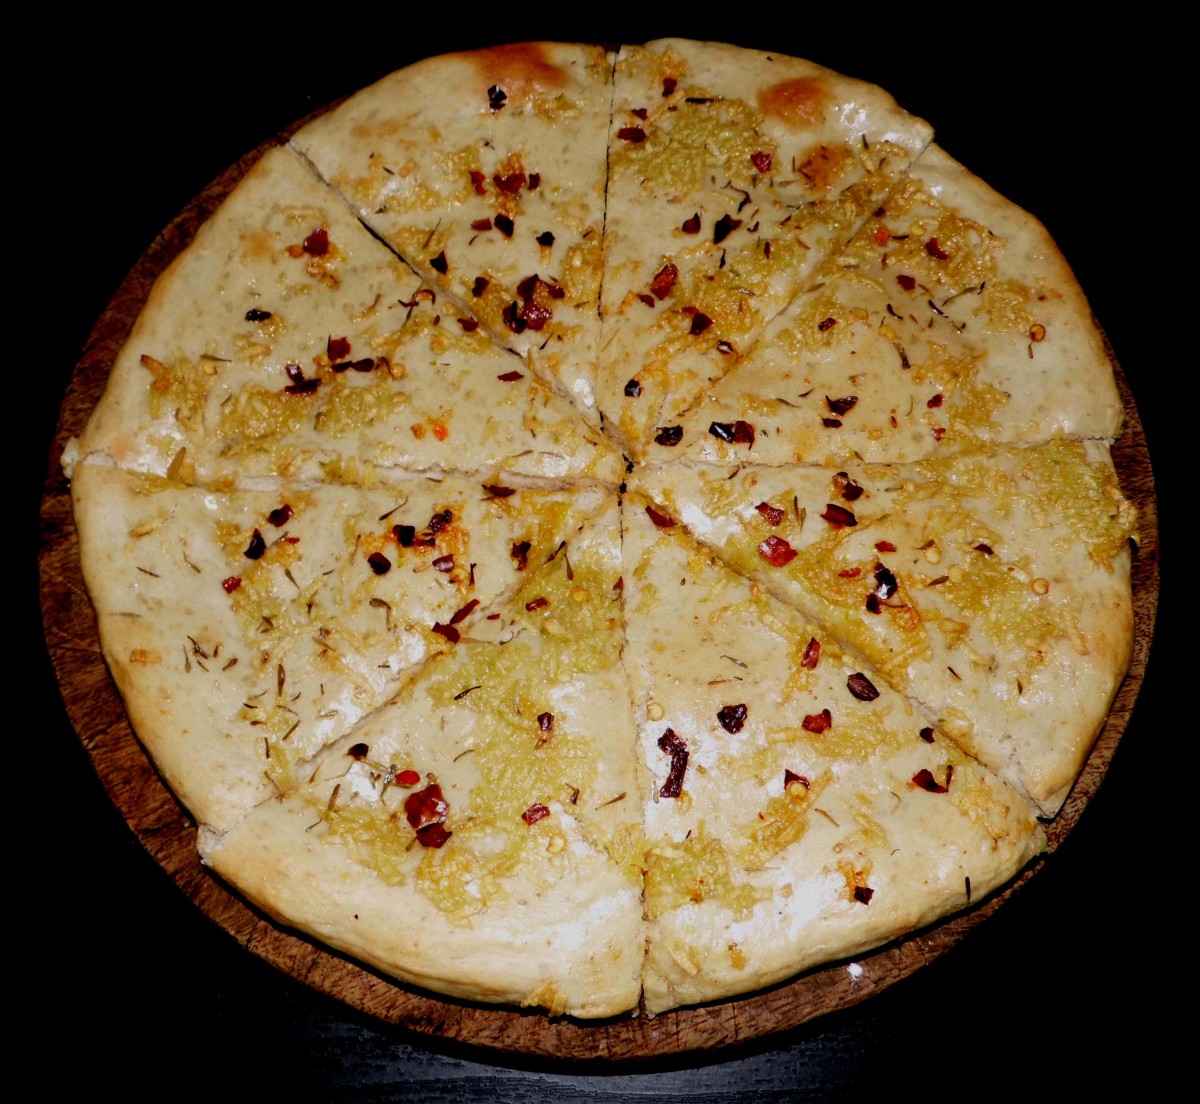 Garlic bread with chilli flakes and oregano